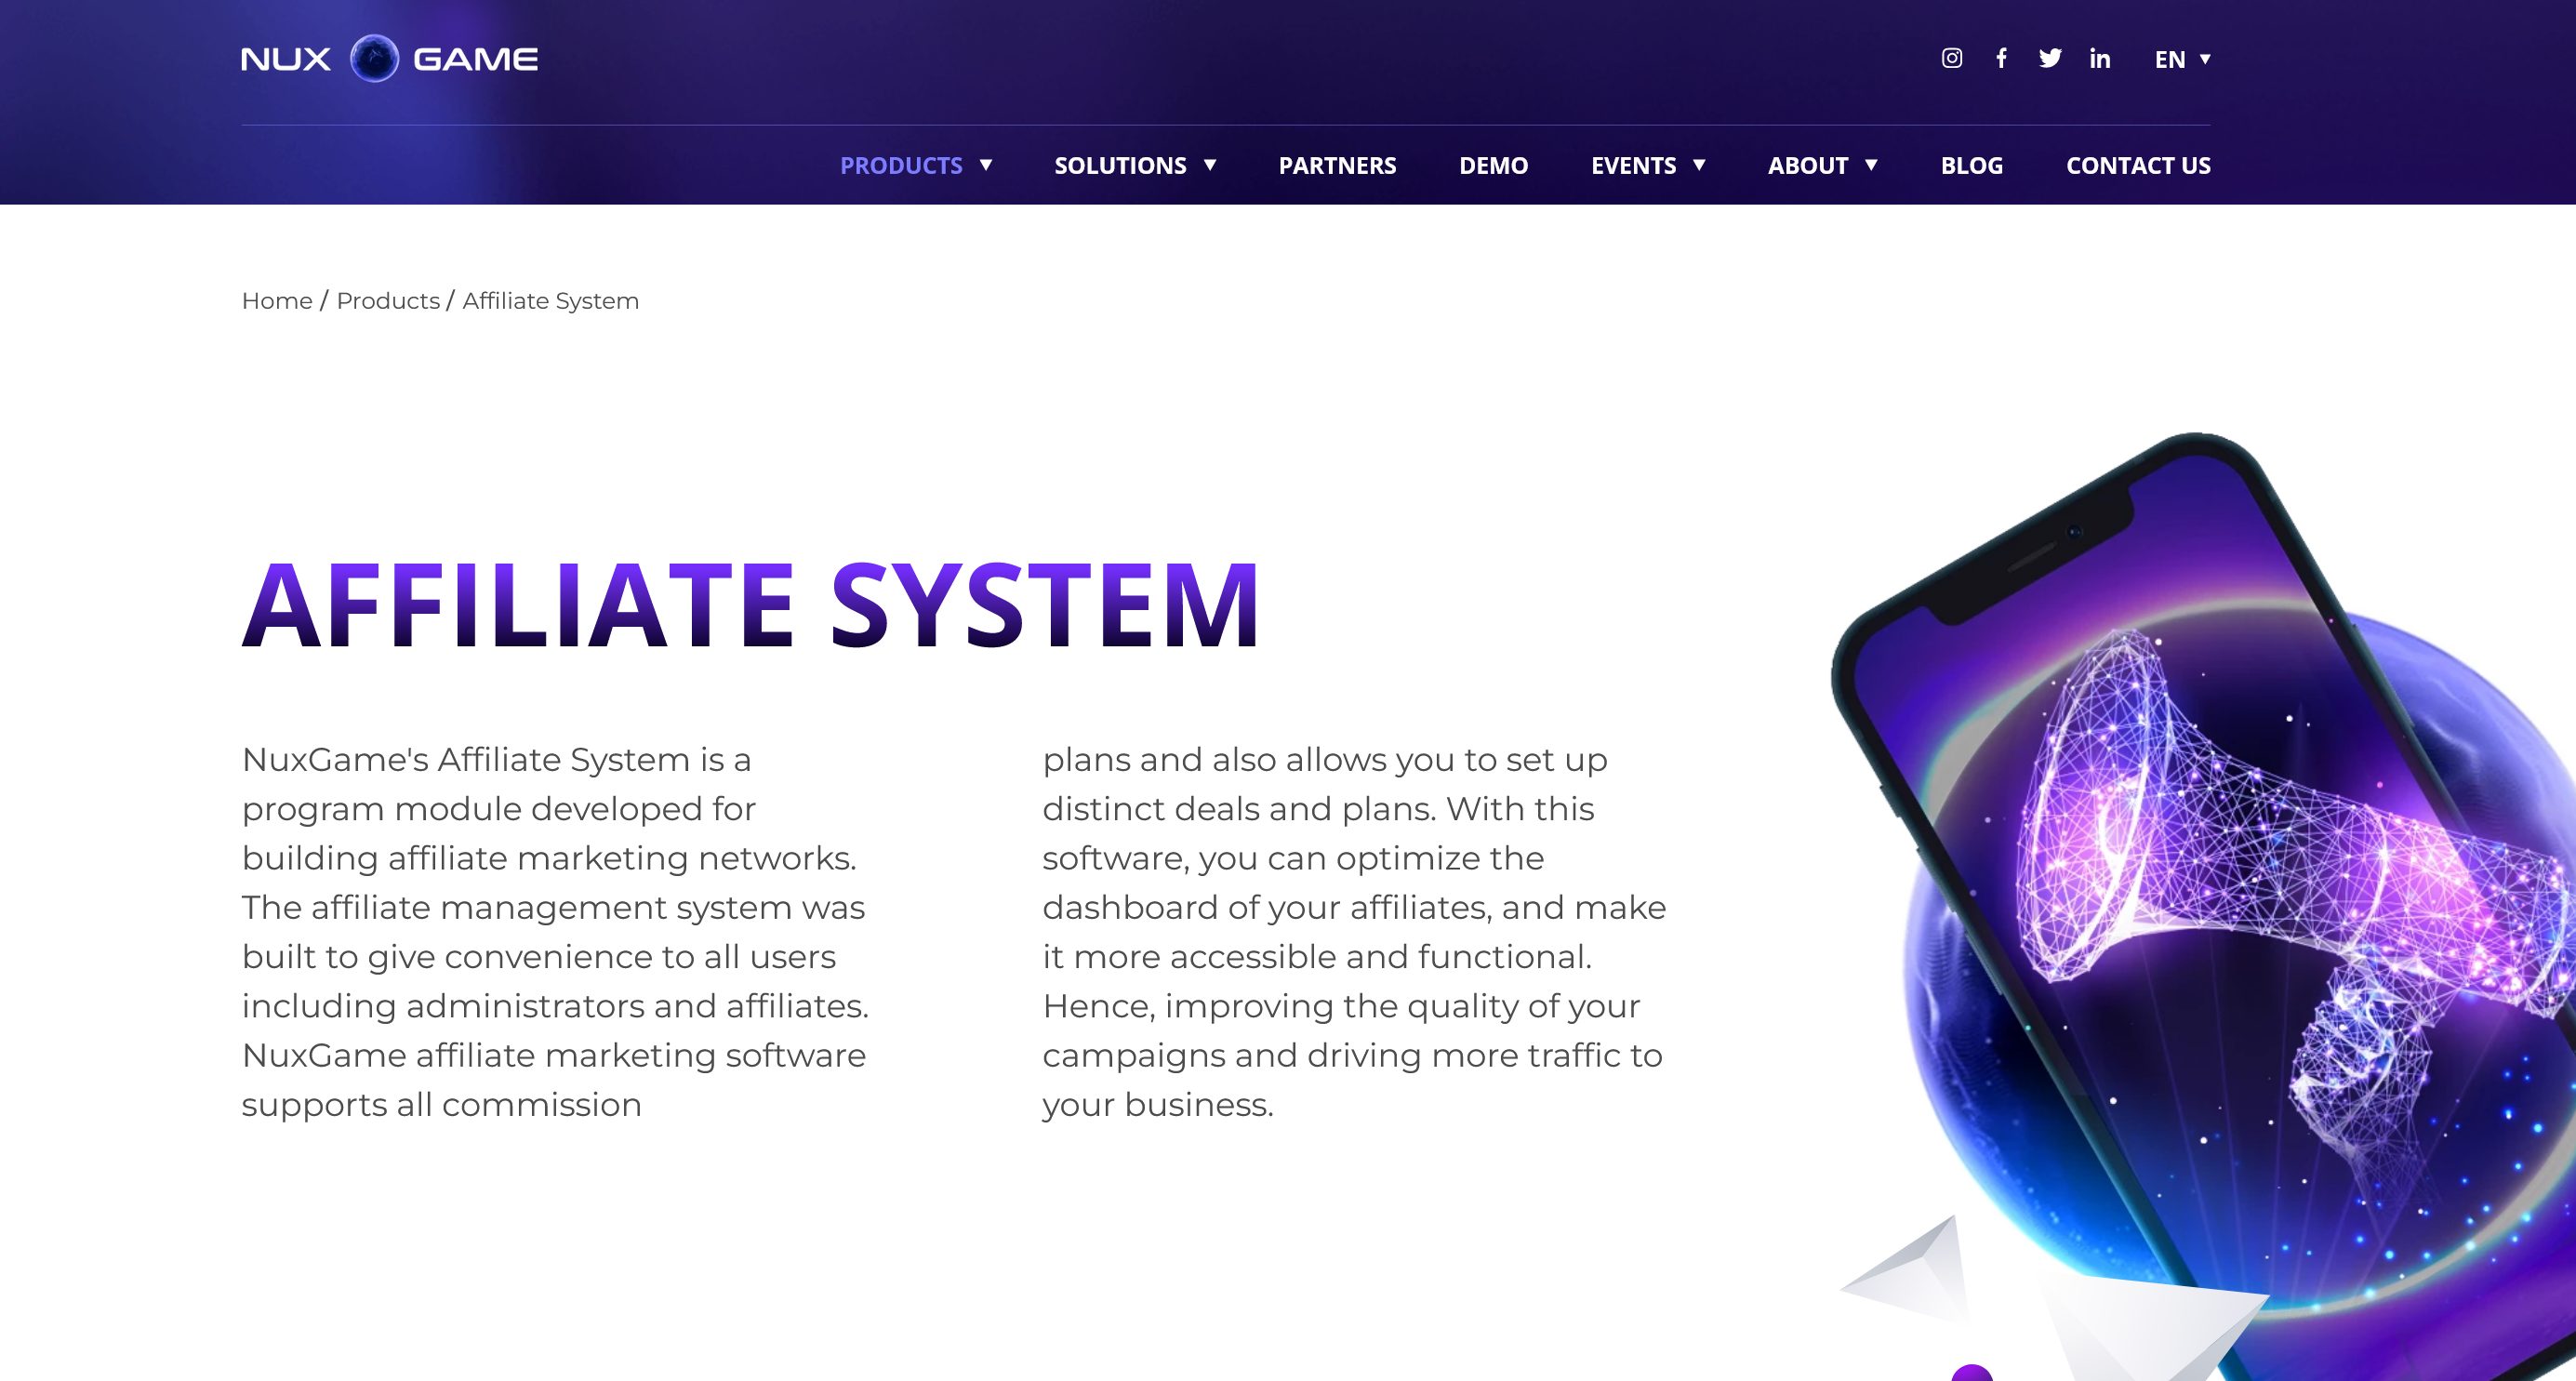 NuxGame Affiliate System 是一个专为创建联盟营销网络而设计的程序模块。